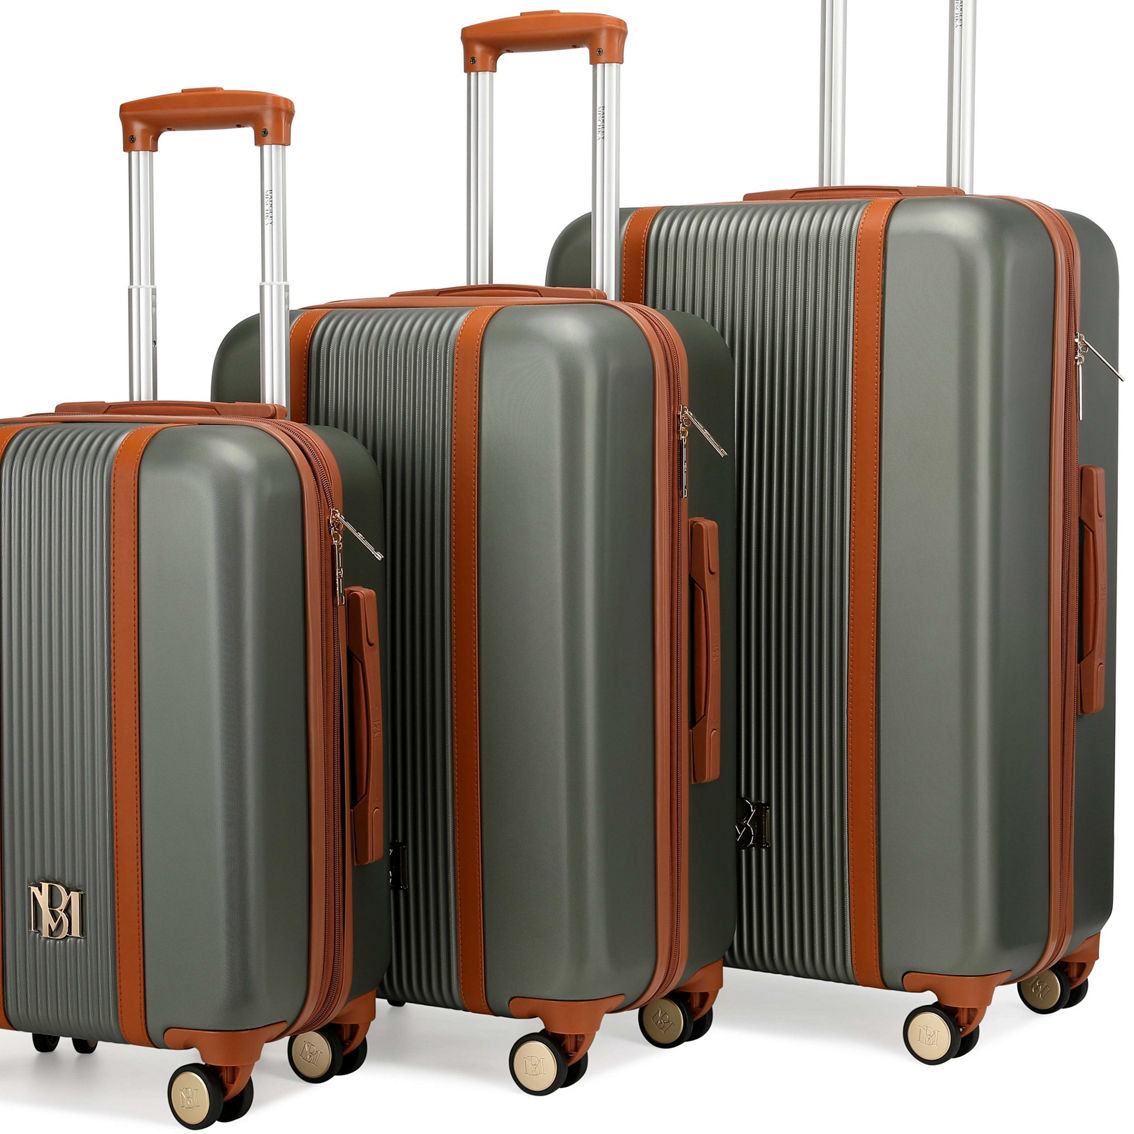 Badgley Mischka Mia 3 Piece Expandable Retro Luggage Set | Luggage ...